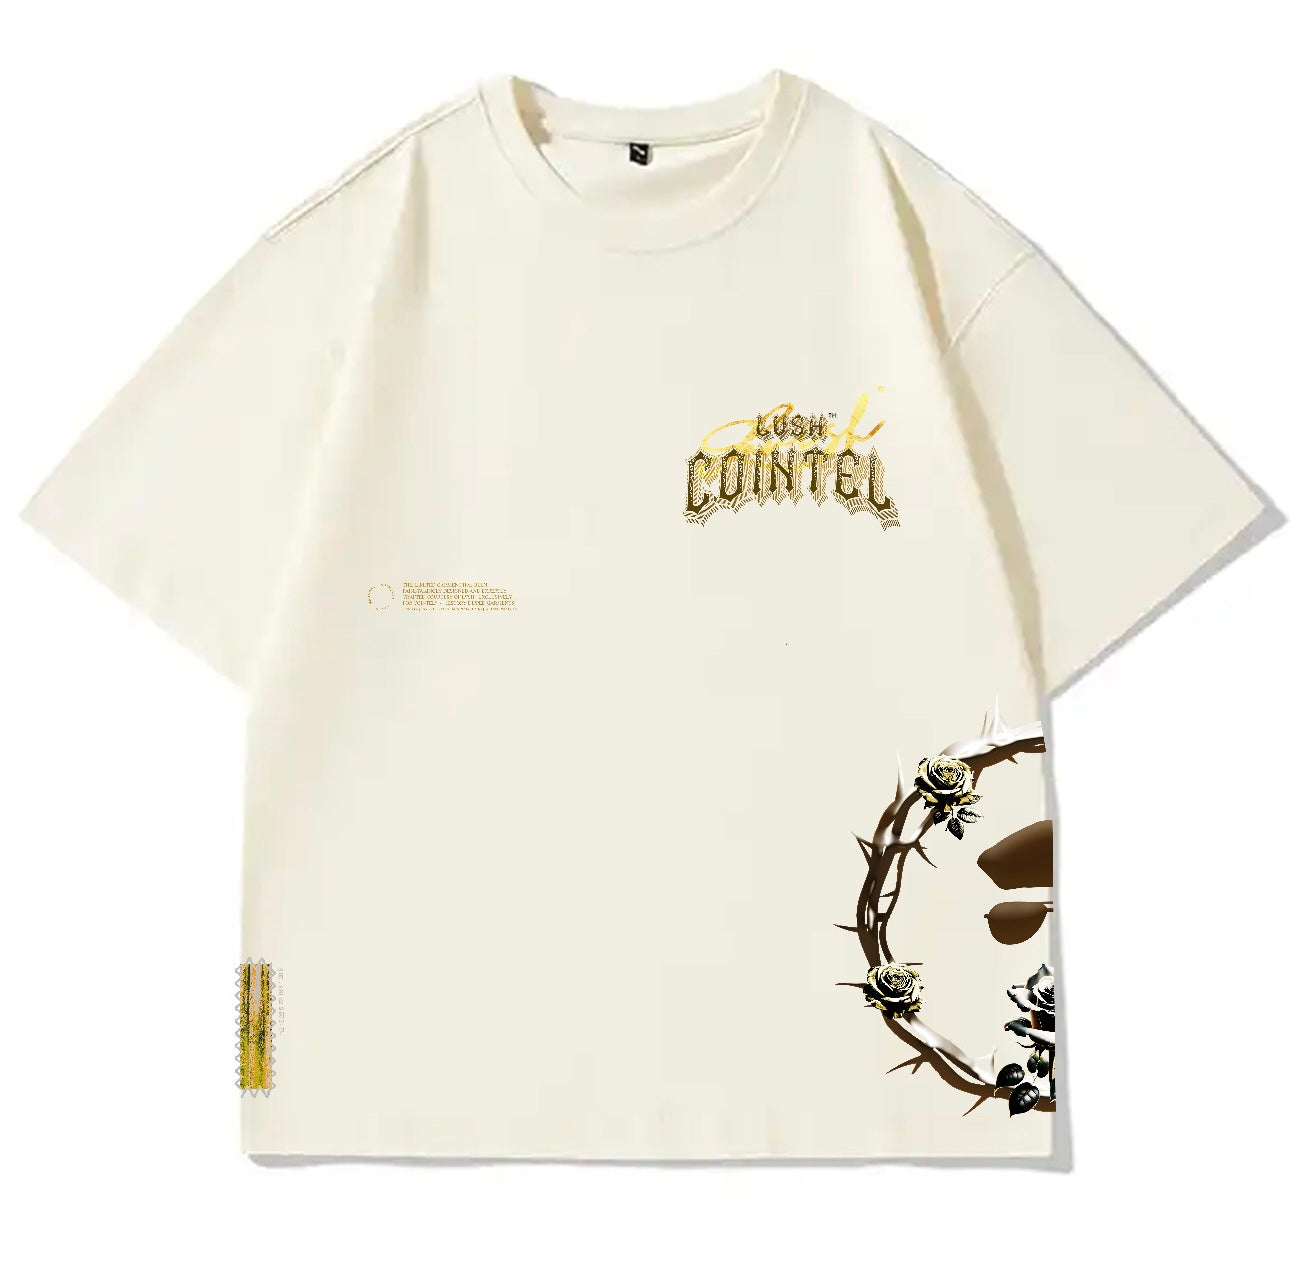 LVSH x COINTEL Cream T-Shirt